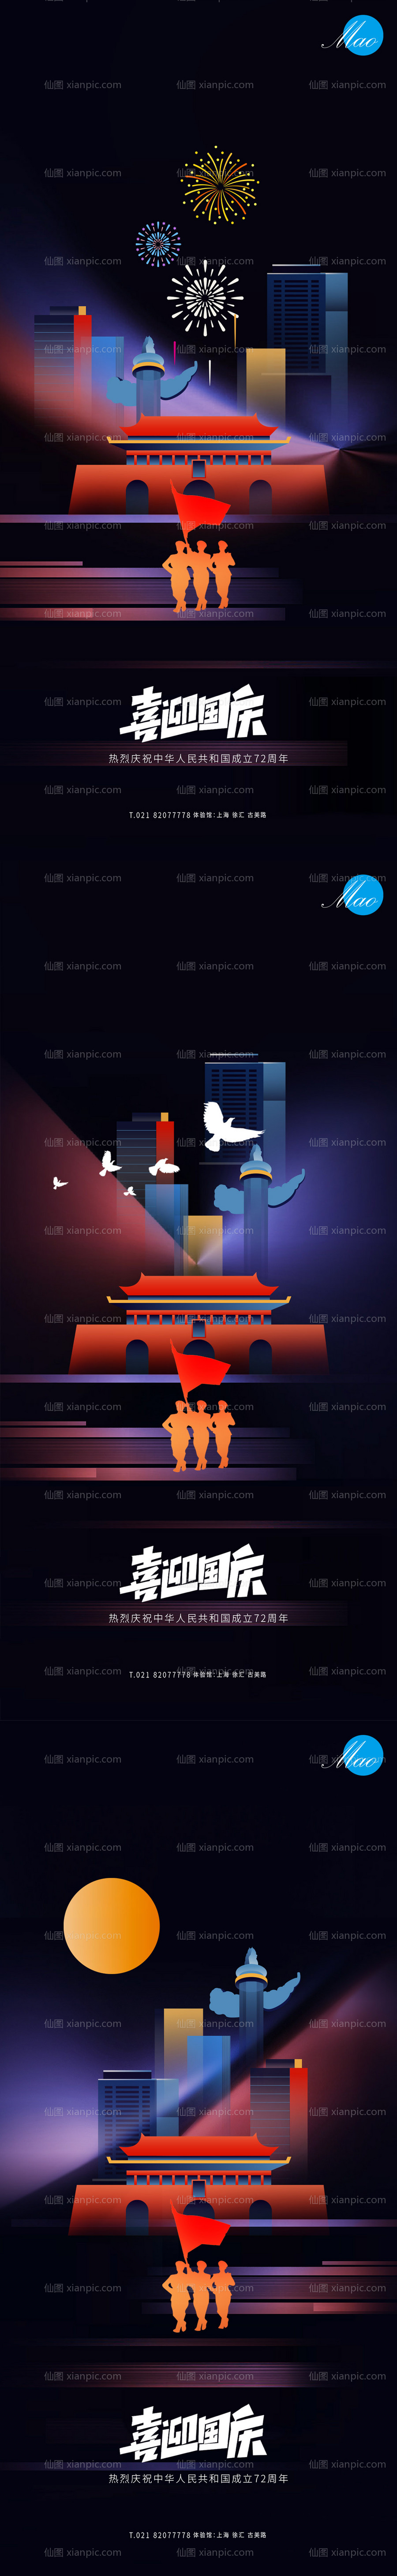 素材乐-十一国庆节系列海报